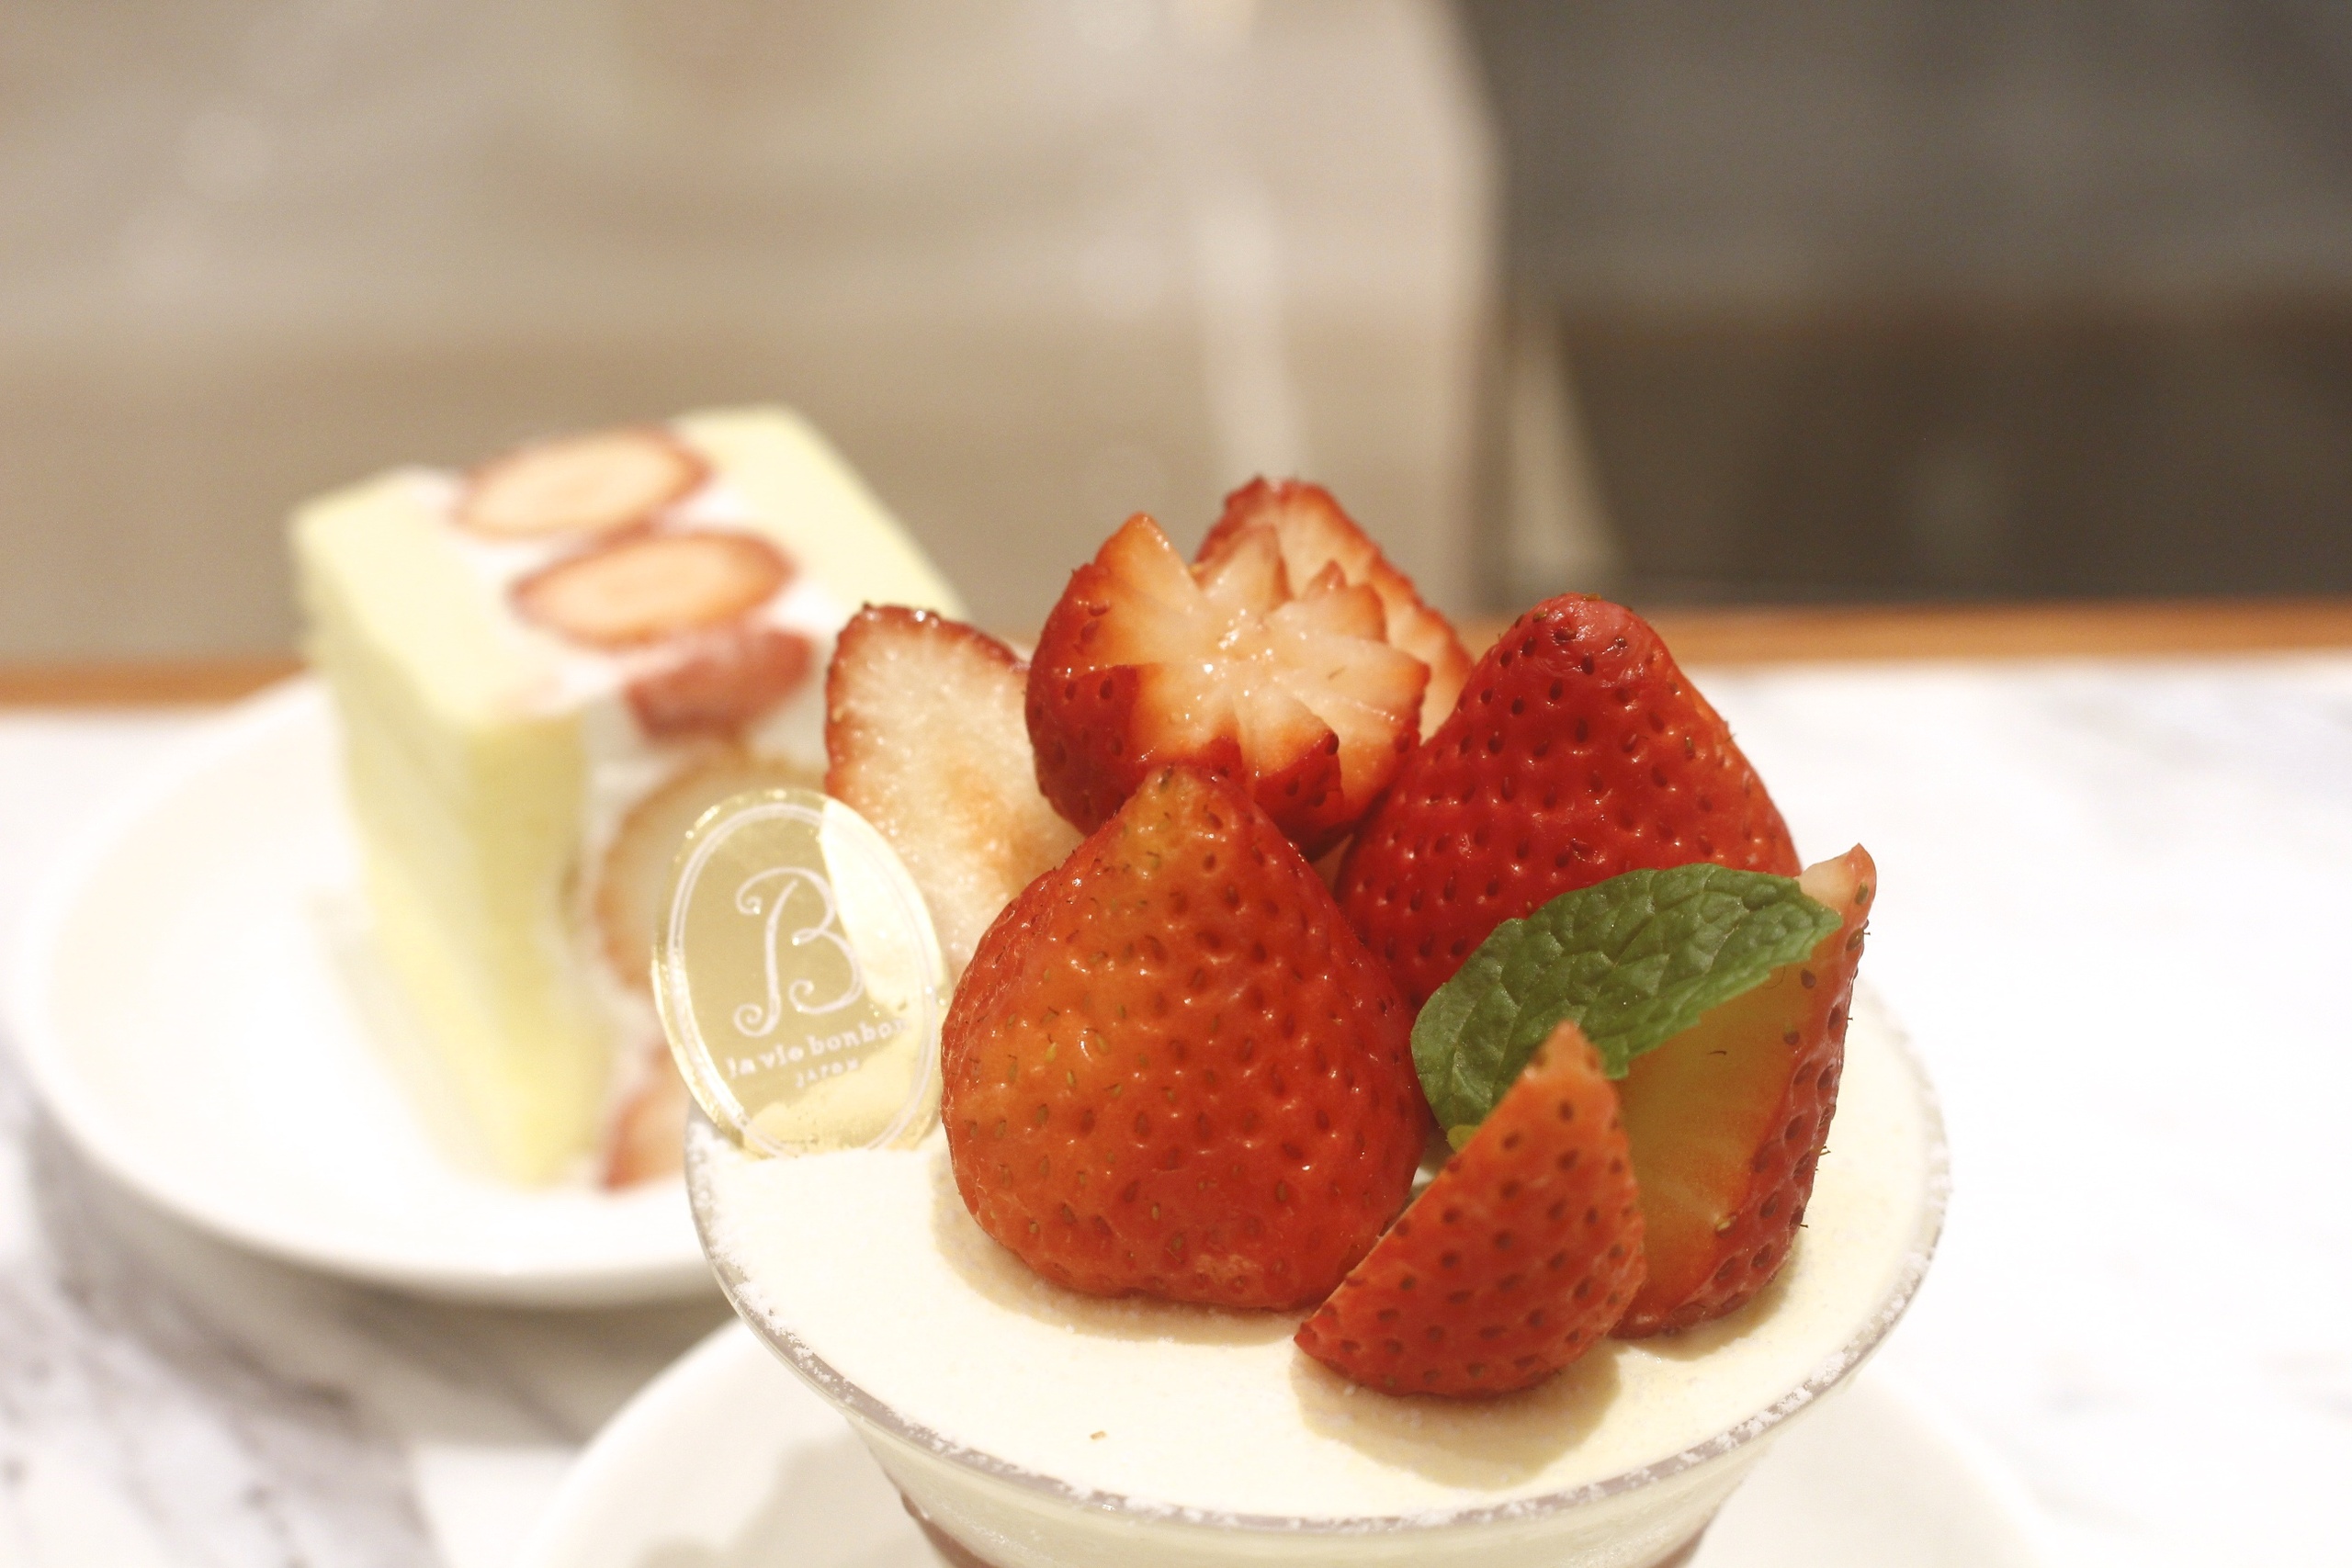 【台北 la vie bonbon】微風南山2樓日本夢幻甜點。讓人幸福的「英式查佛蛋糕」